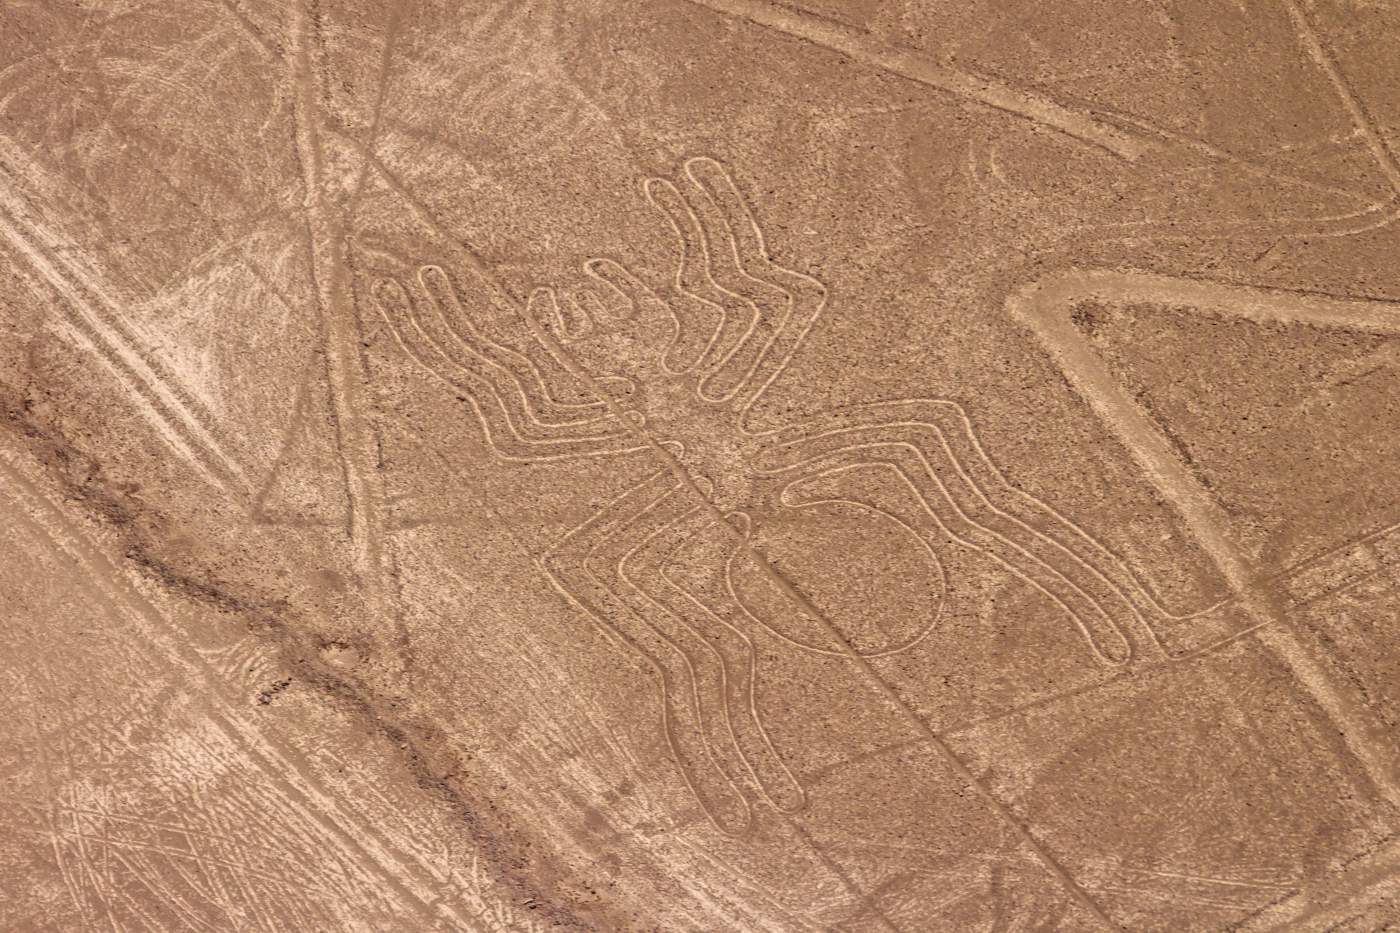 Die Linien von Nazca, Peru